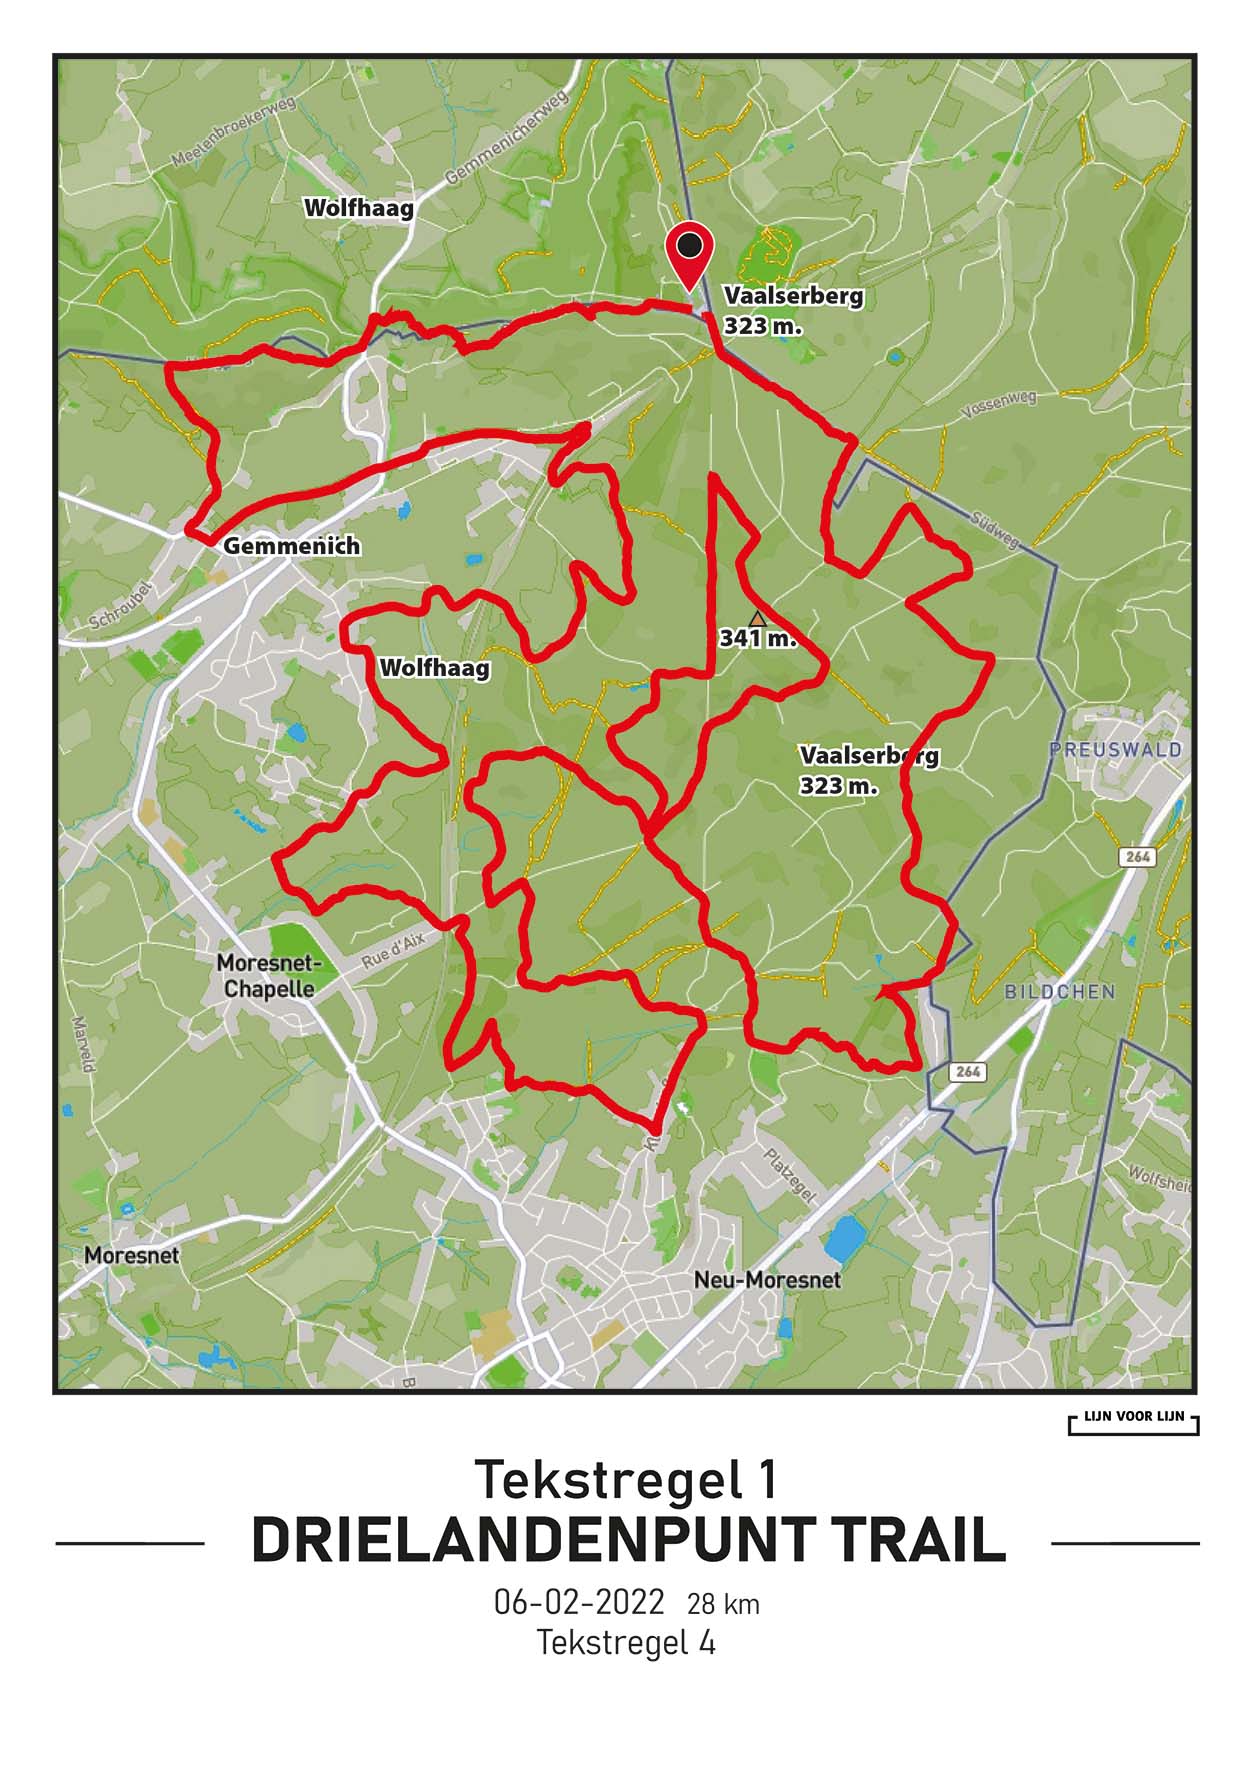 Drielanden Trail, 28km, 2022